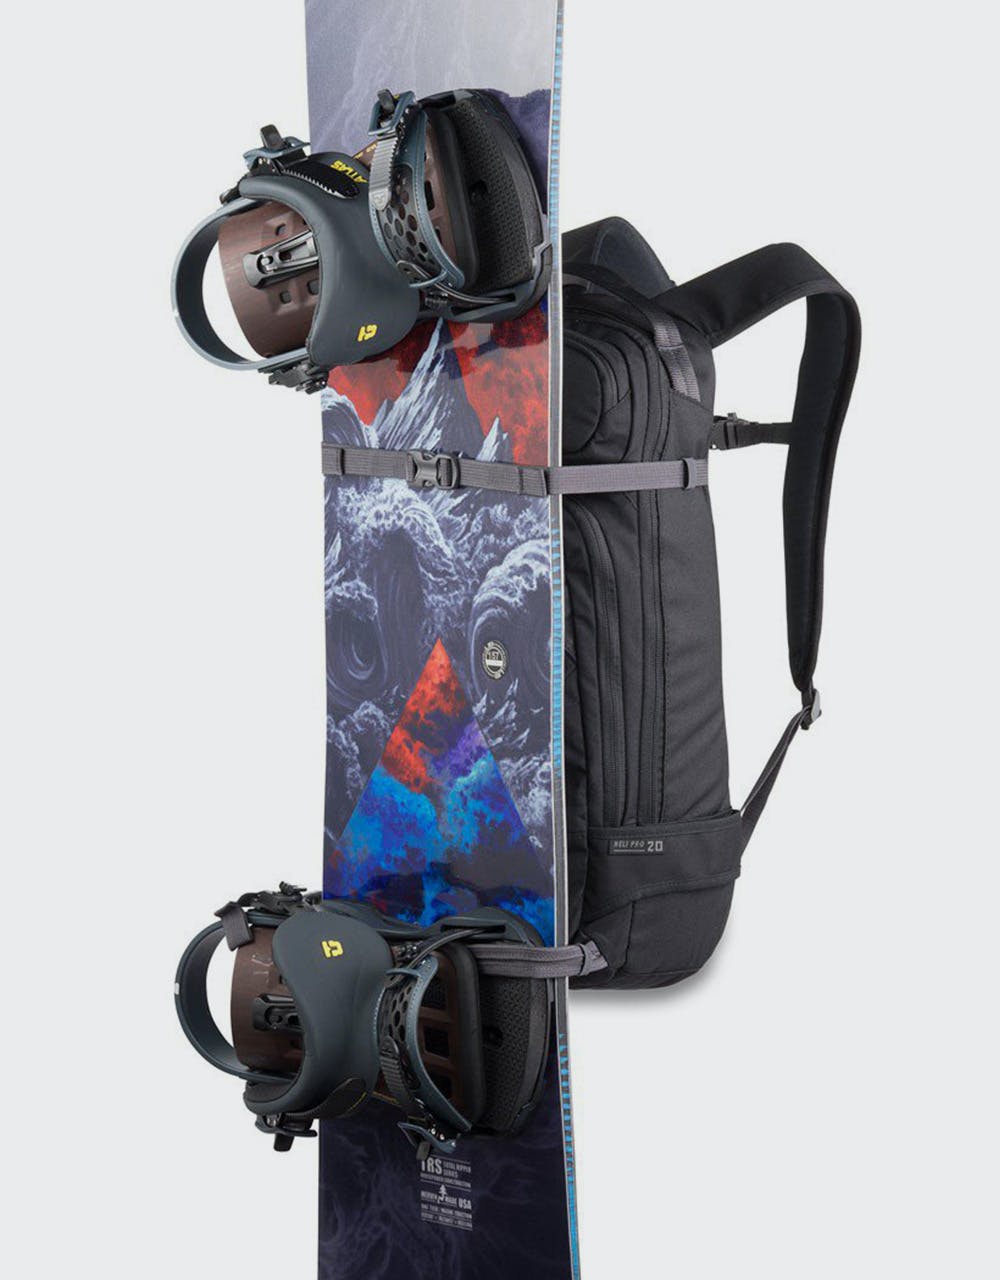 Dakine Heli Pro 20L Backpack - Greyscale